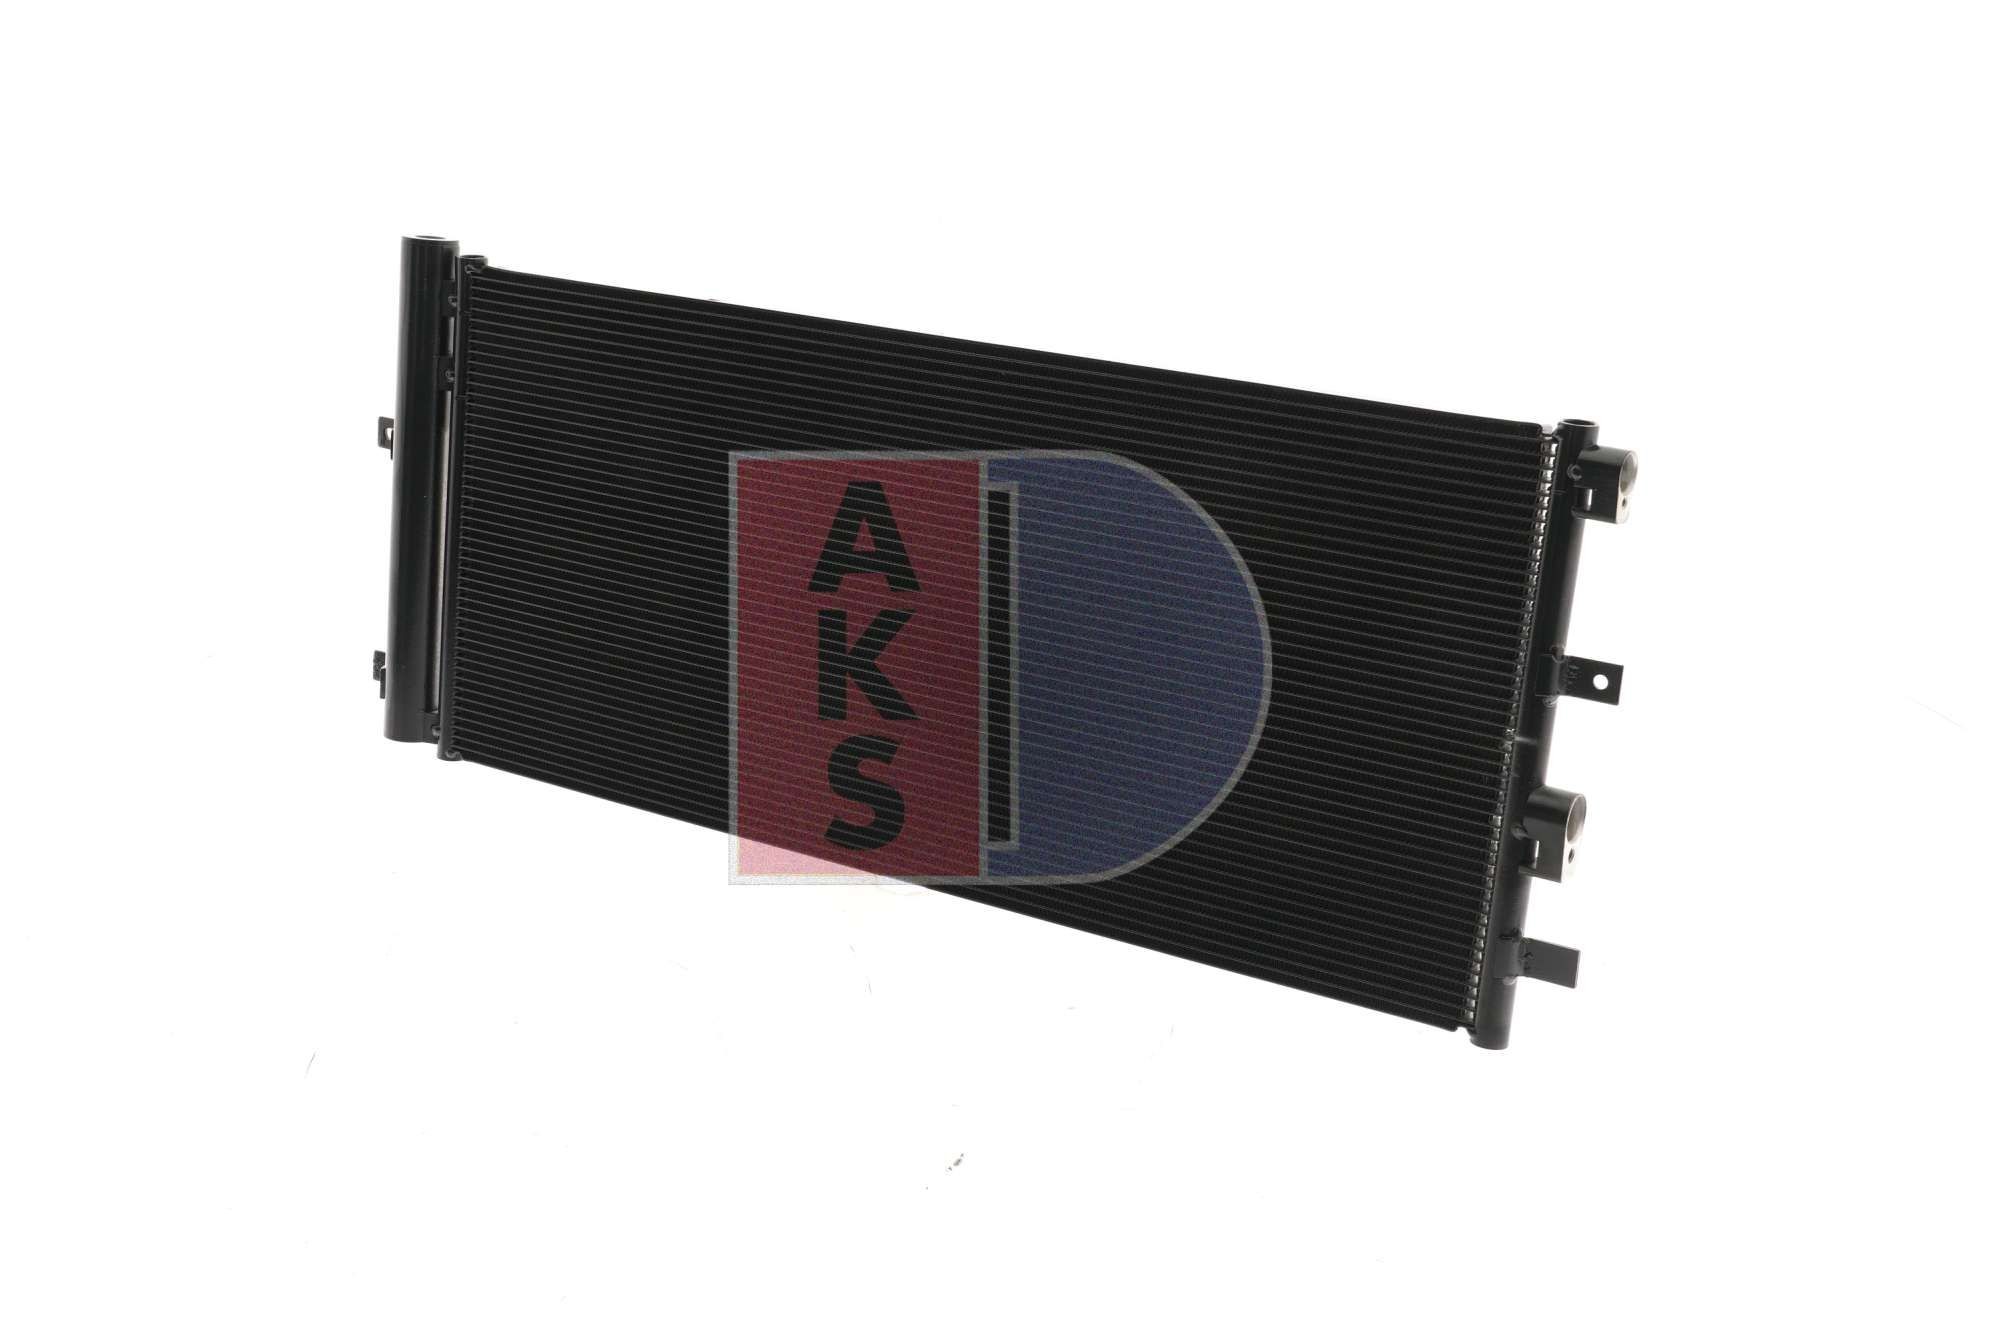 AKS DASIS Air con condenser 092082N for FORD MONDEO, S-MAX, GALAXY